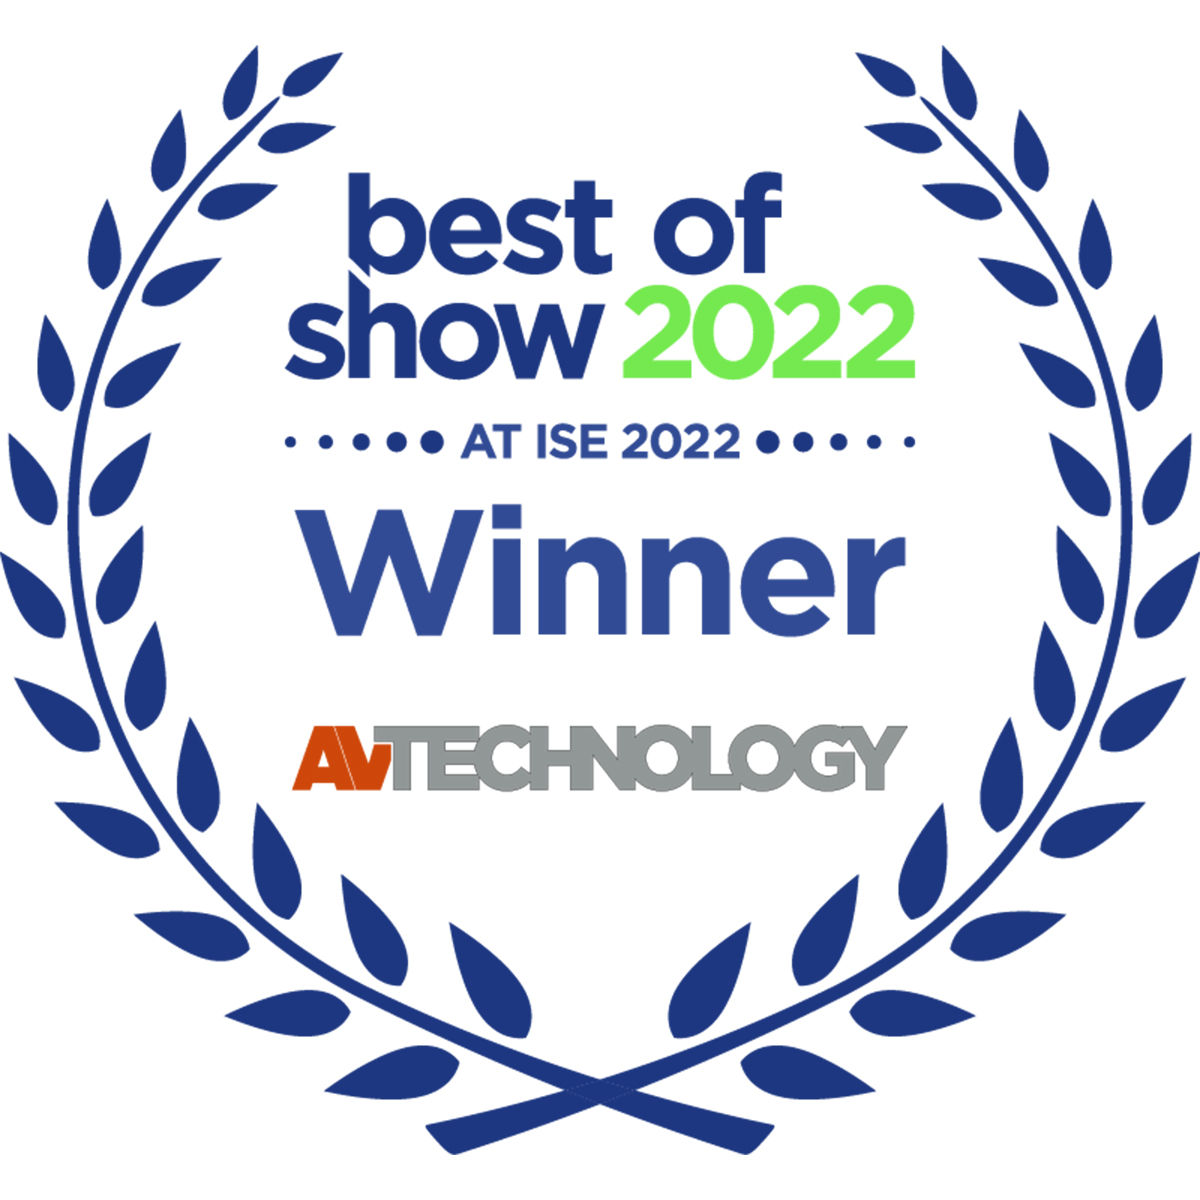 AV Technology “Best of Show” at ISE